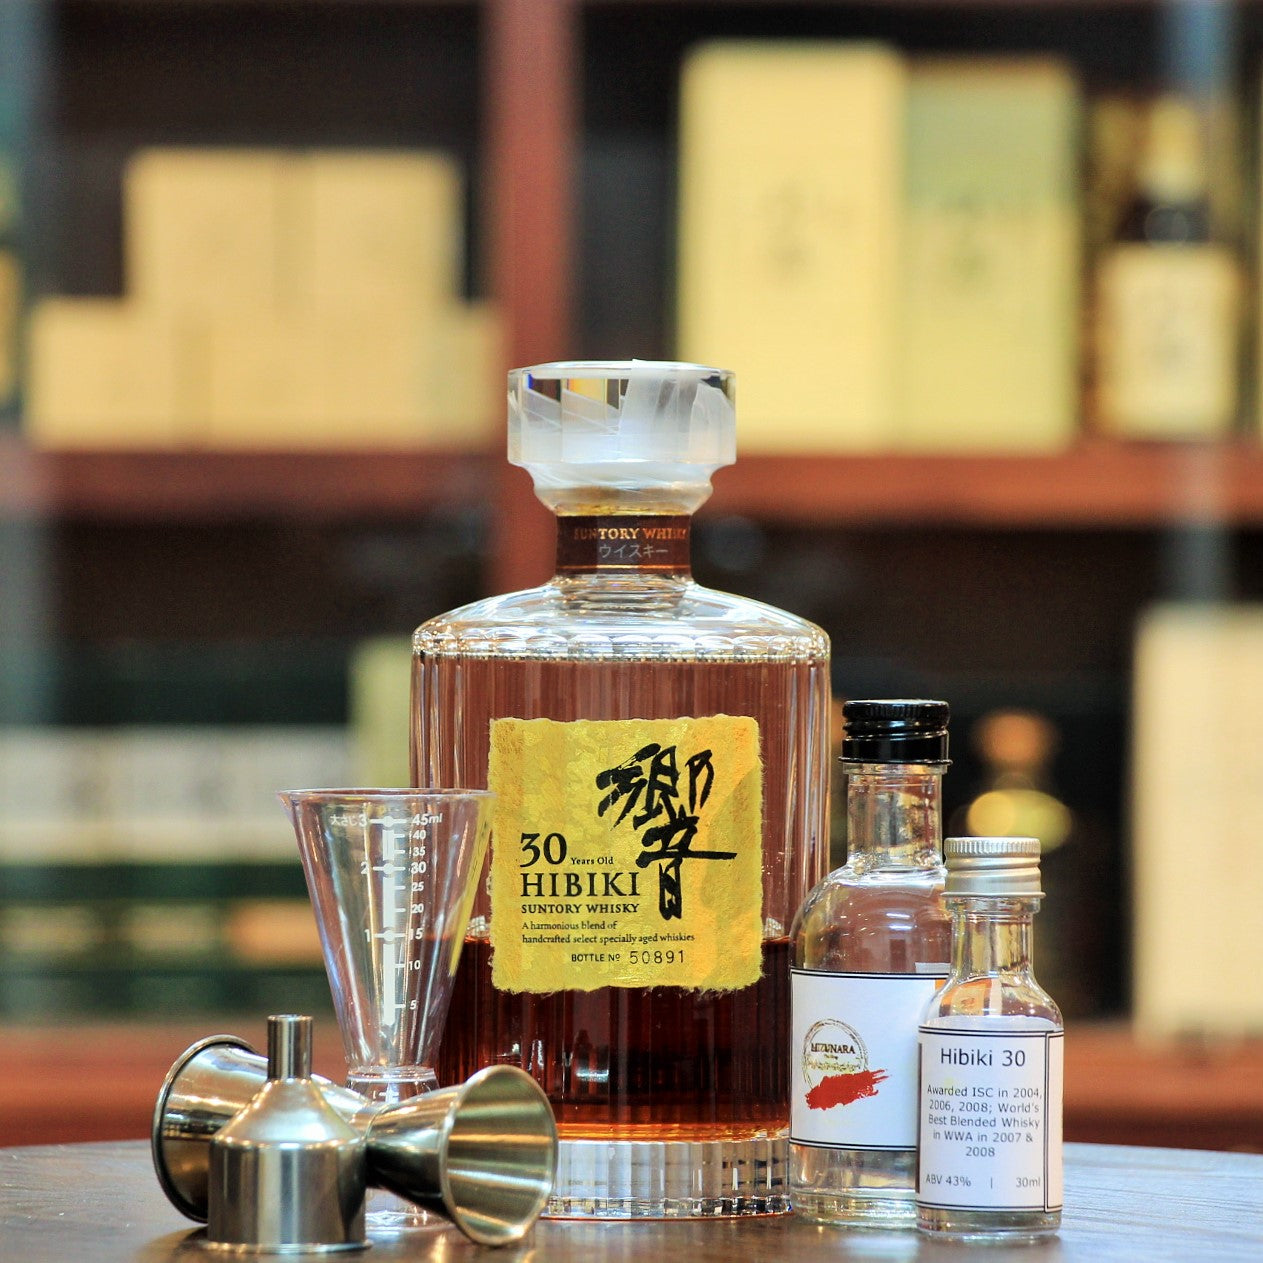 Hibiki 30 Years Japanese Blended Whisky (30 ml 100 ml Sample)